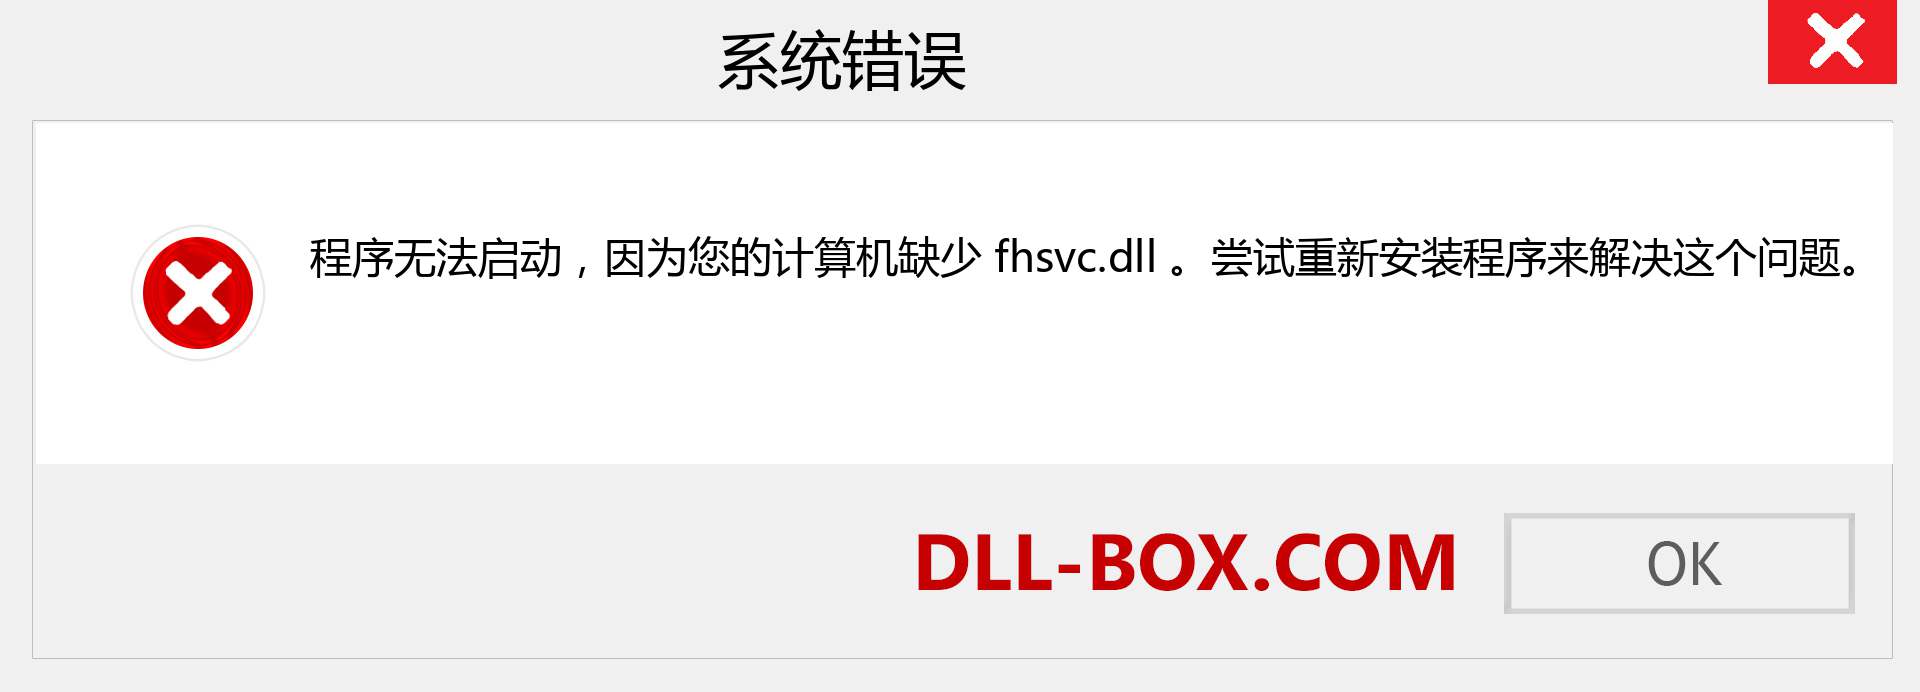 fhsvc.dll 文件丢失？。 适用于 Windows 7、8、10 的下载 - 修复 Windows、照片、图像上的 fhsvc dll 丢失错误